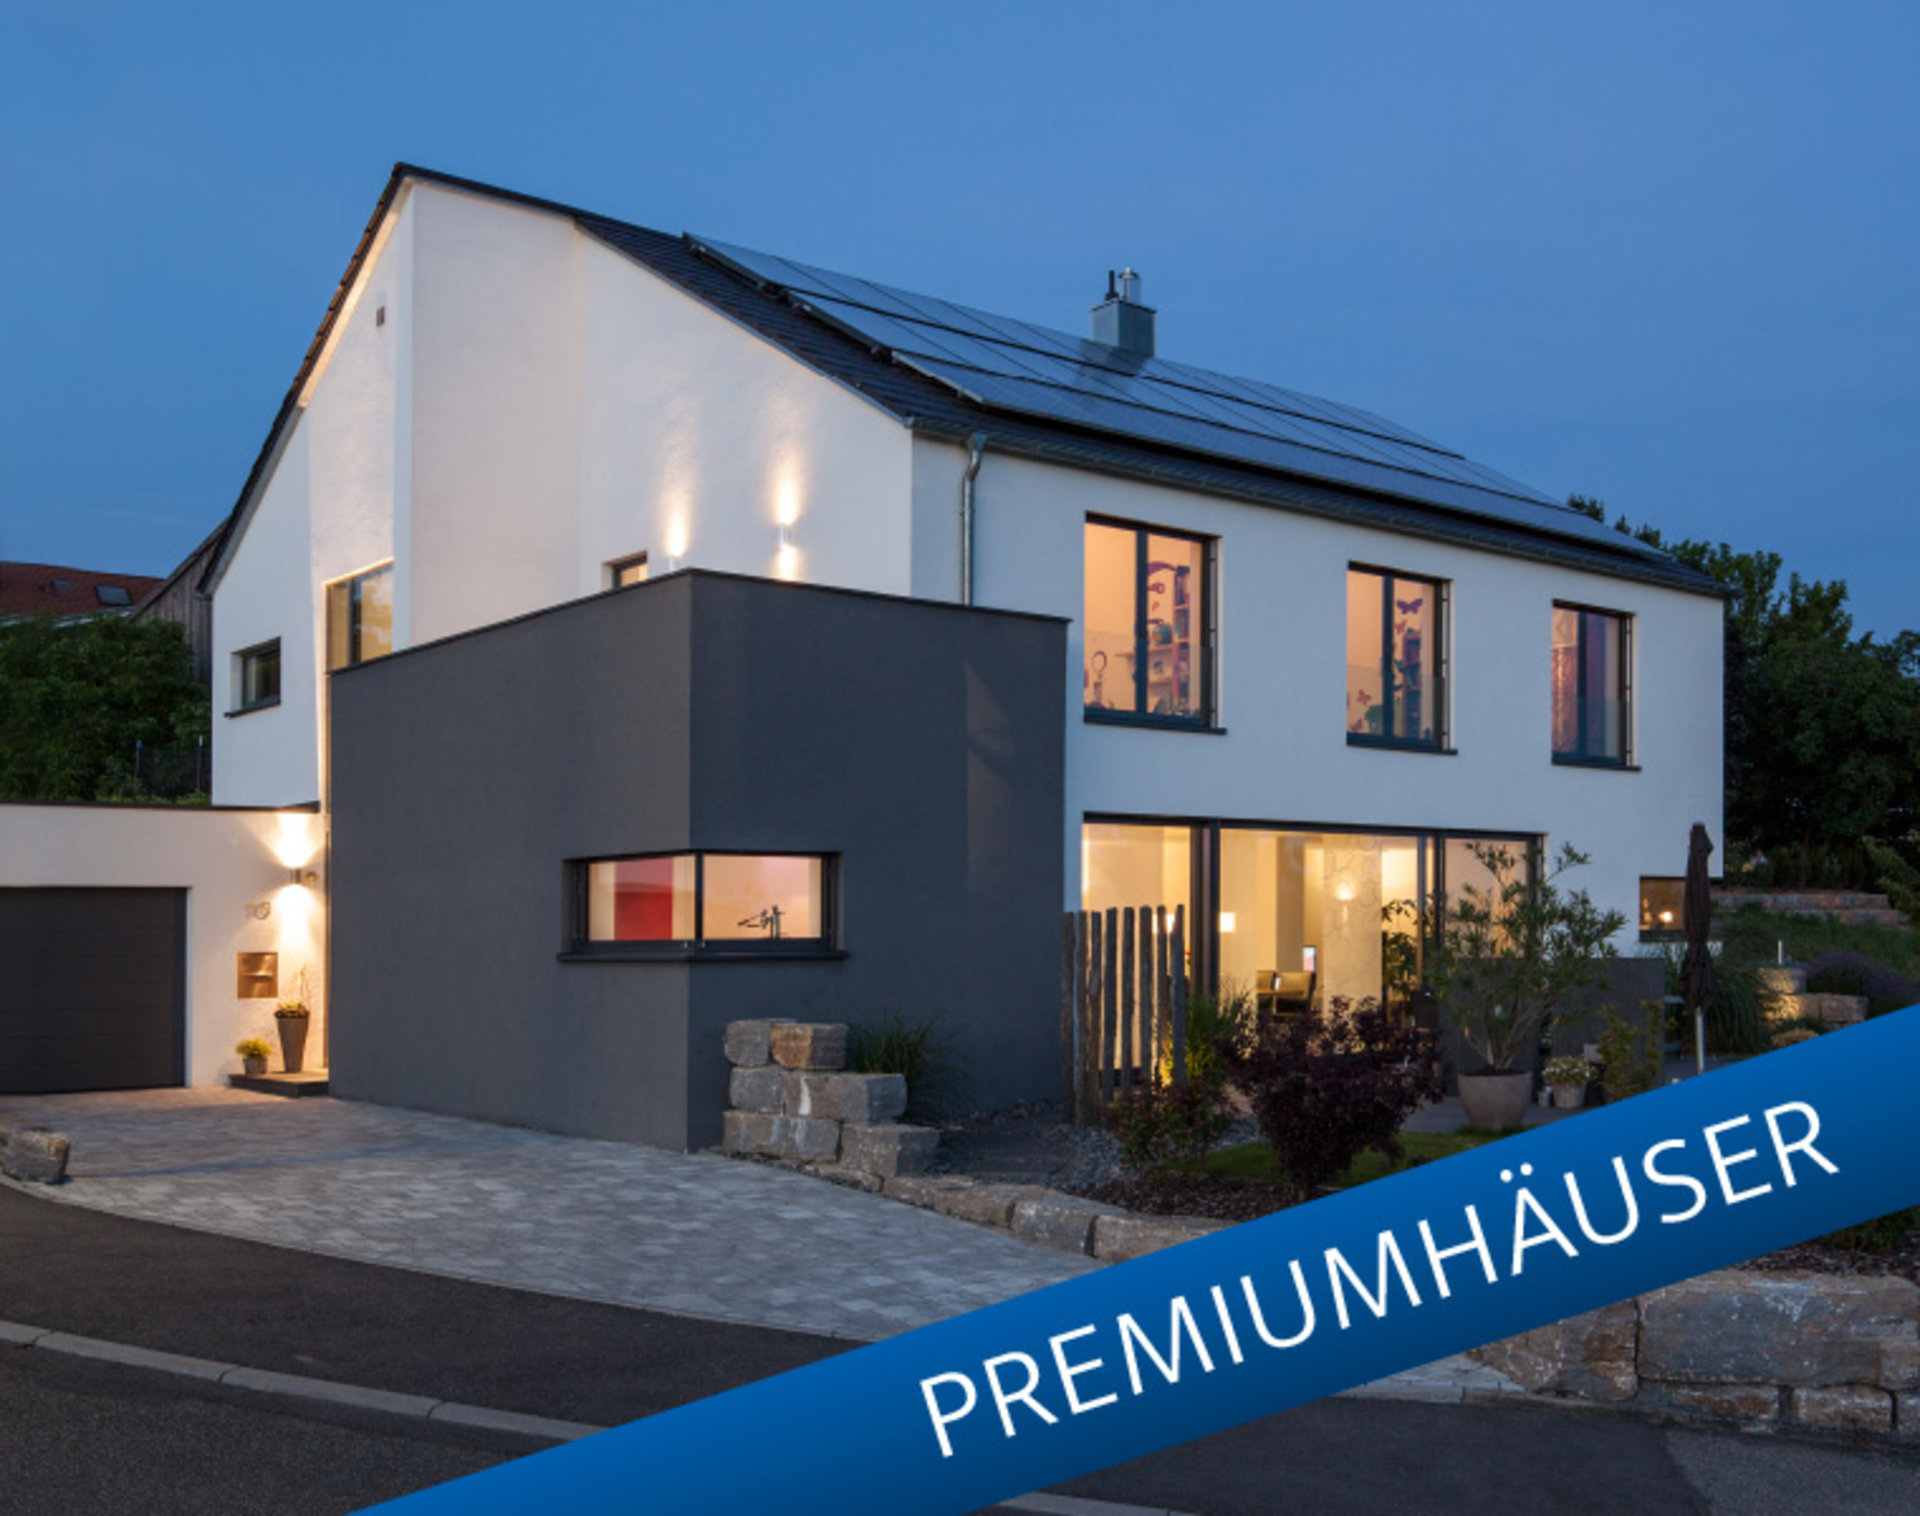 Einfamilienhaus Rademacher nominiert in der Kategorie Premiumhäuser